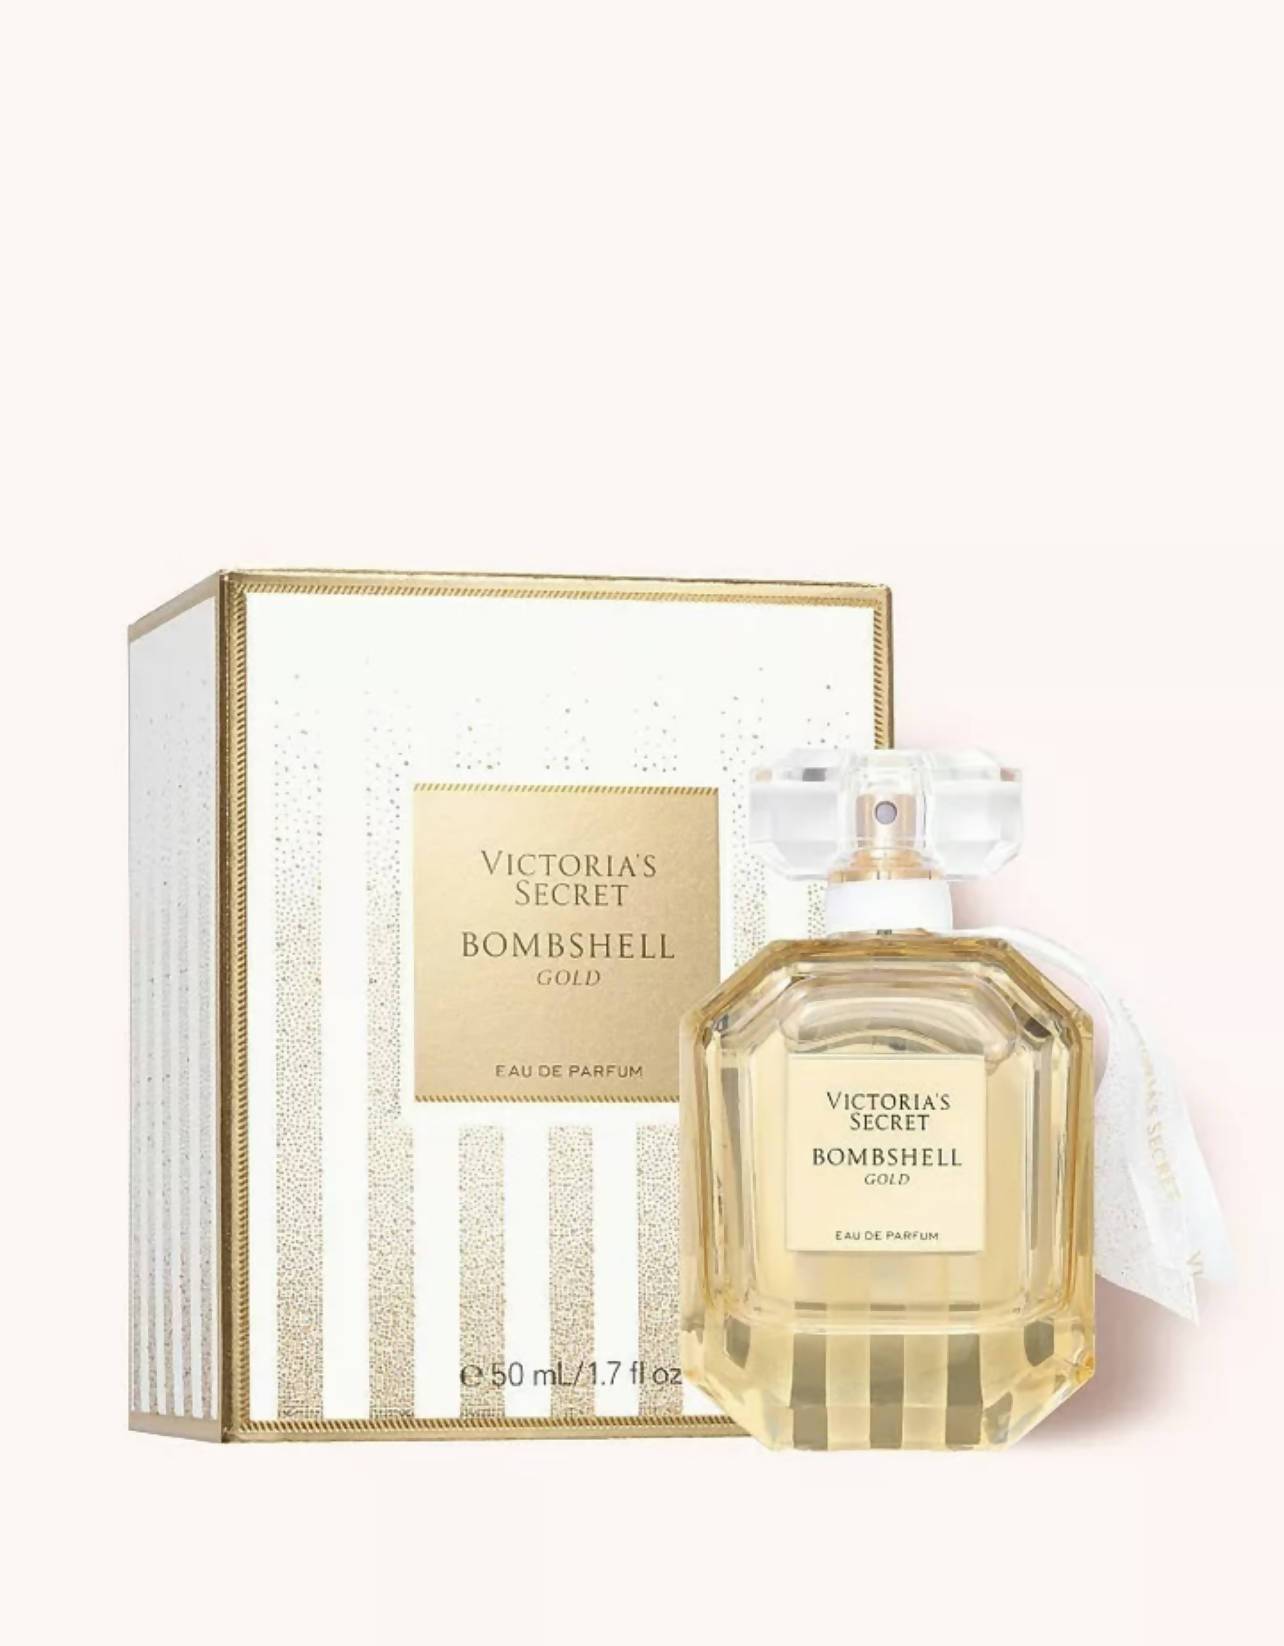 Victoria Secret Bombshell Gold Eau de Parfum 50ml Limited Edition Minoustore